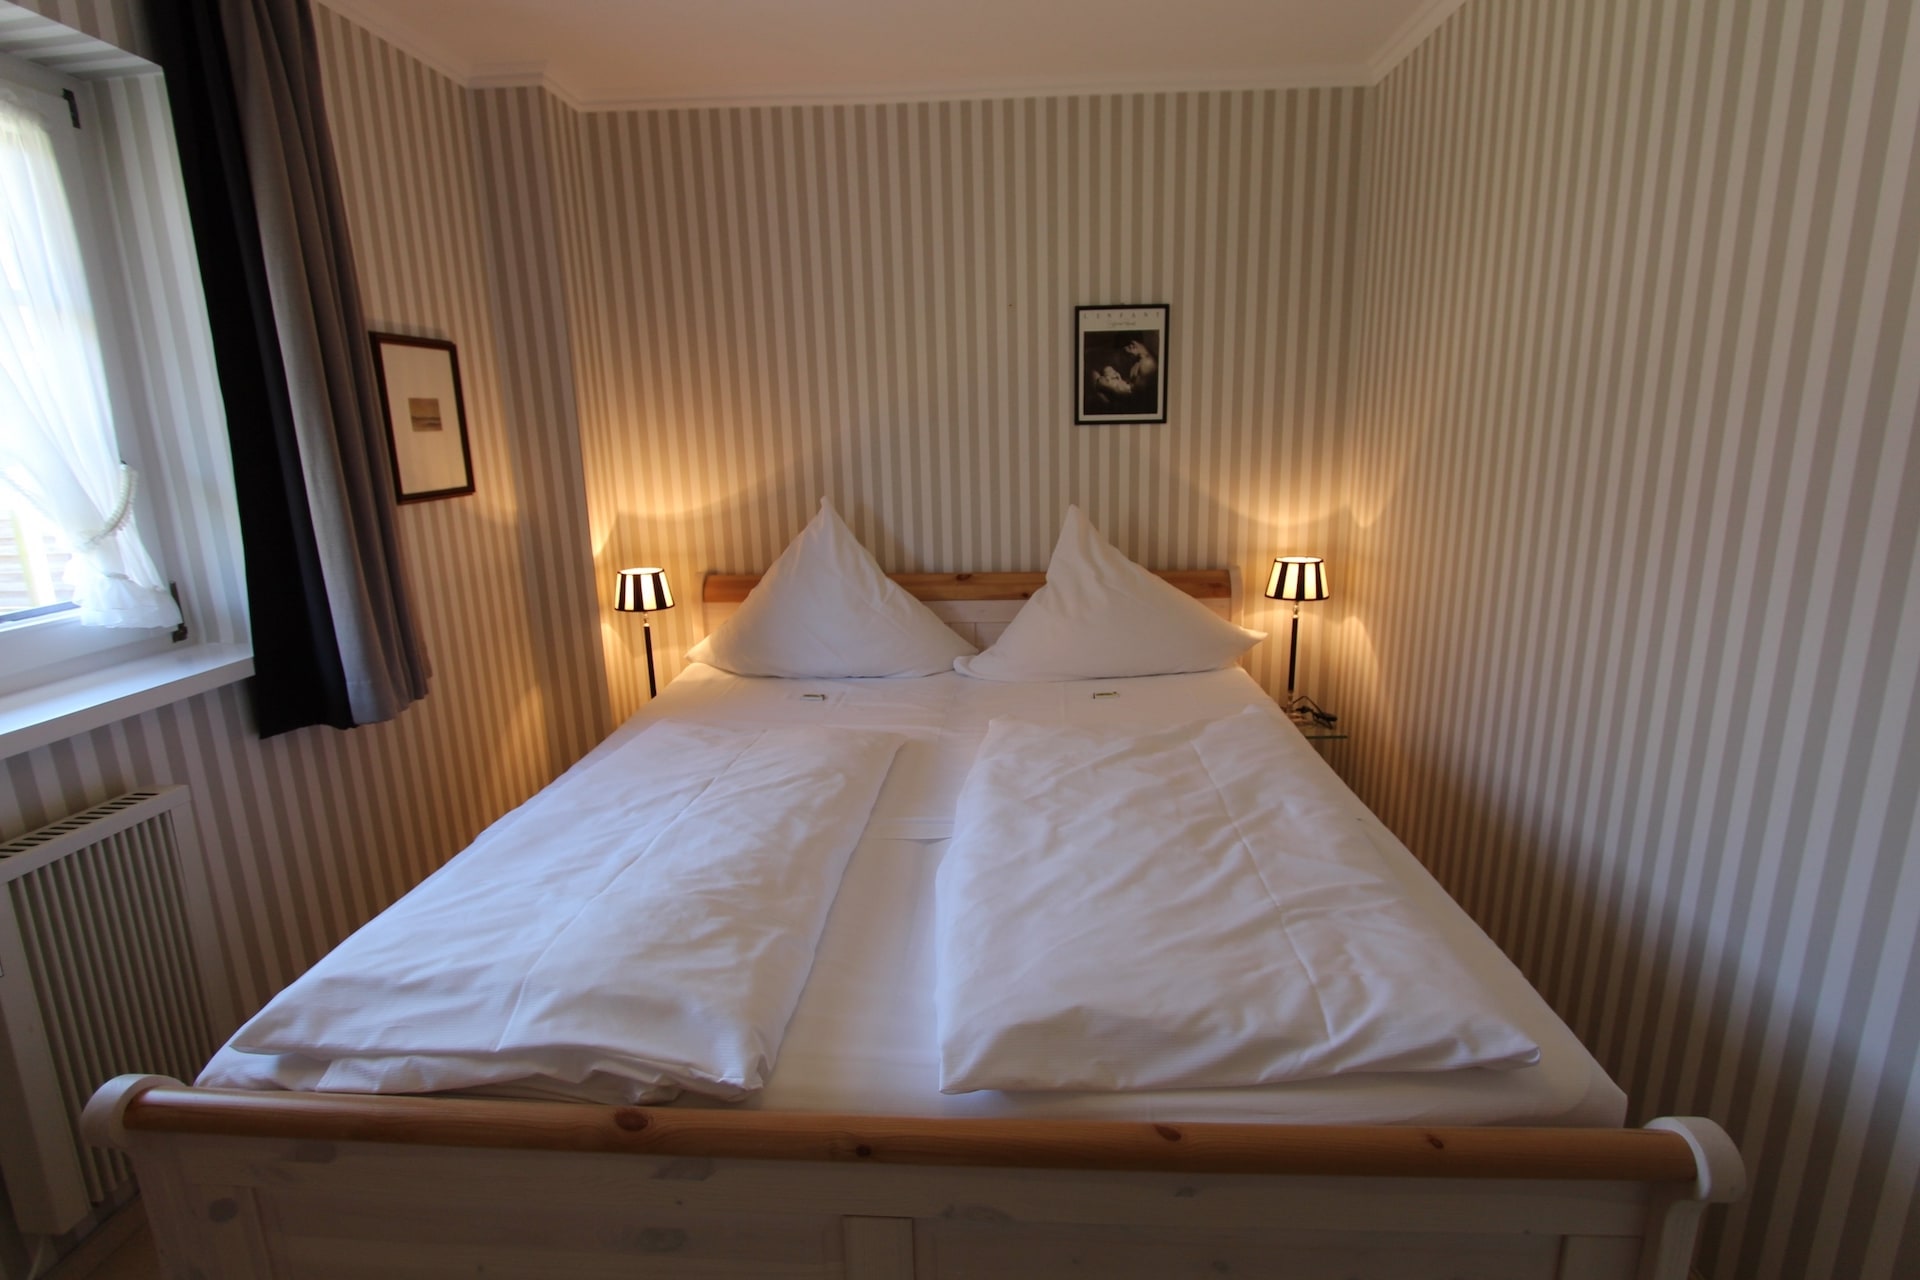 Schlafzimmer in der Ferienwohnung B1 im Hotel Sylter Hahn in Westerland auf Sylt